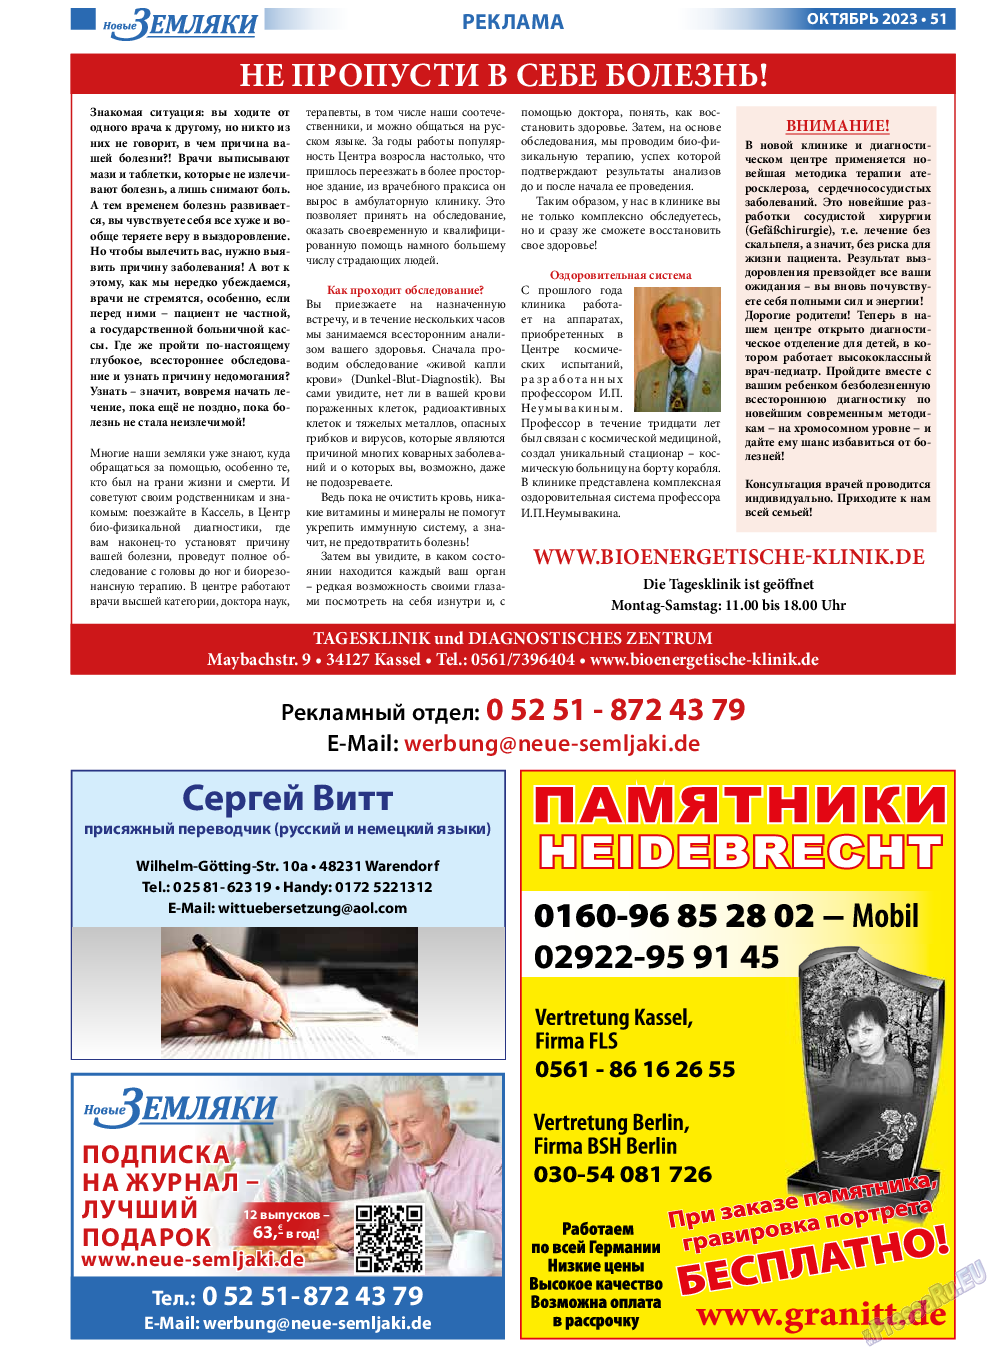 Новые Земляки, газета. 2023 №10 стр.51